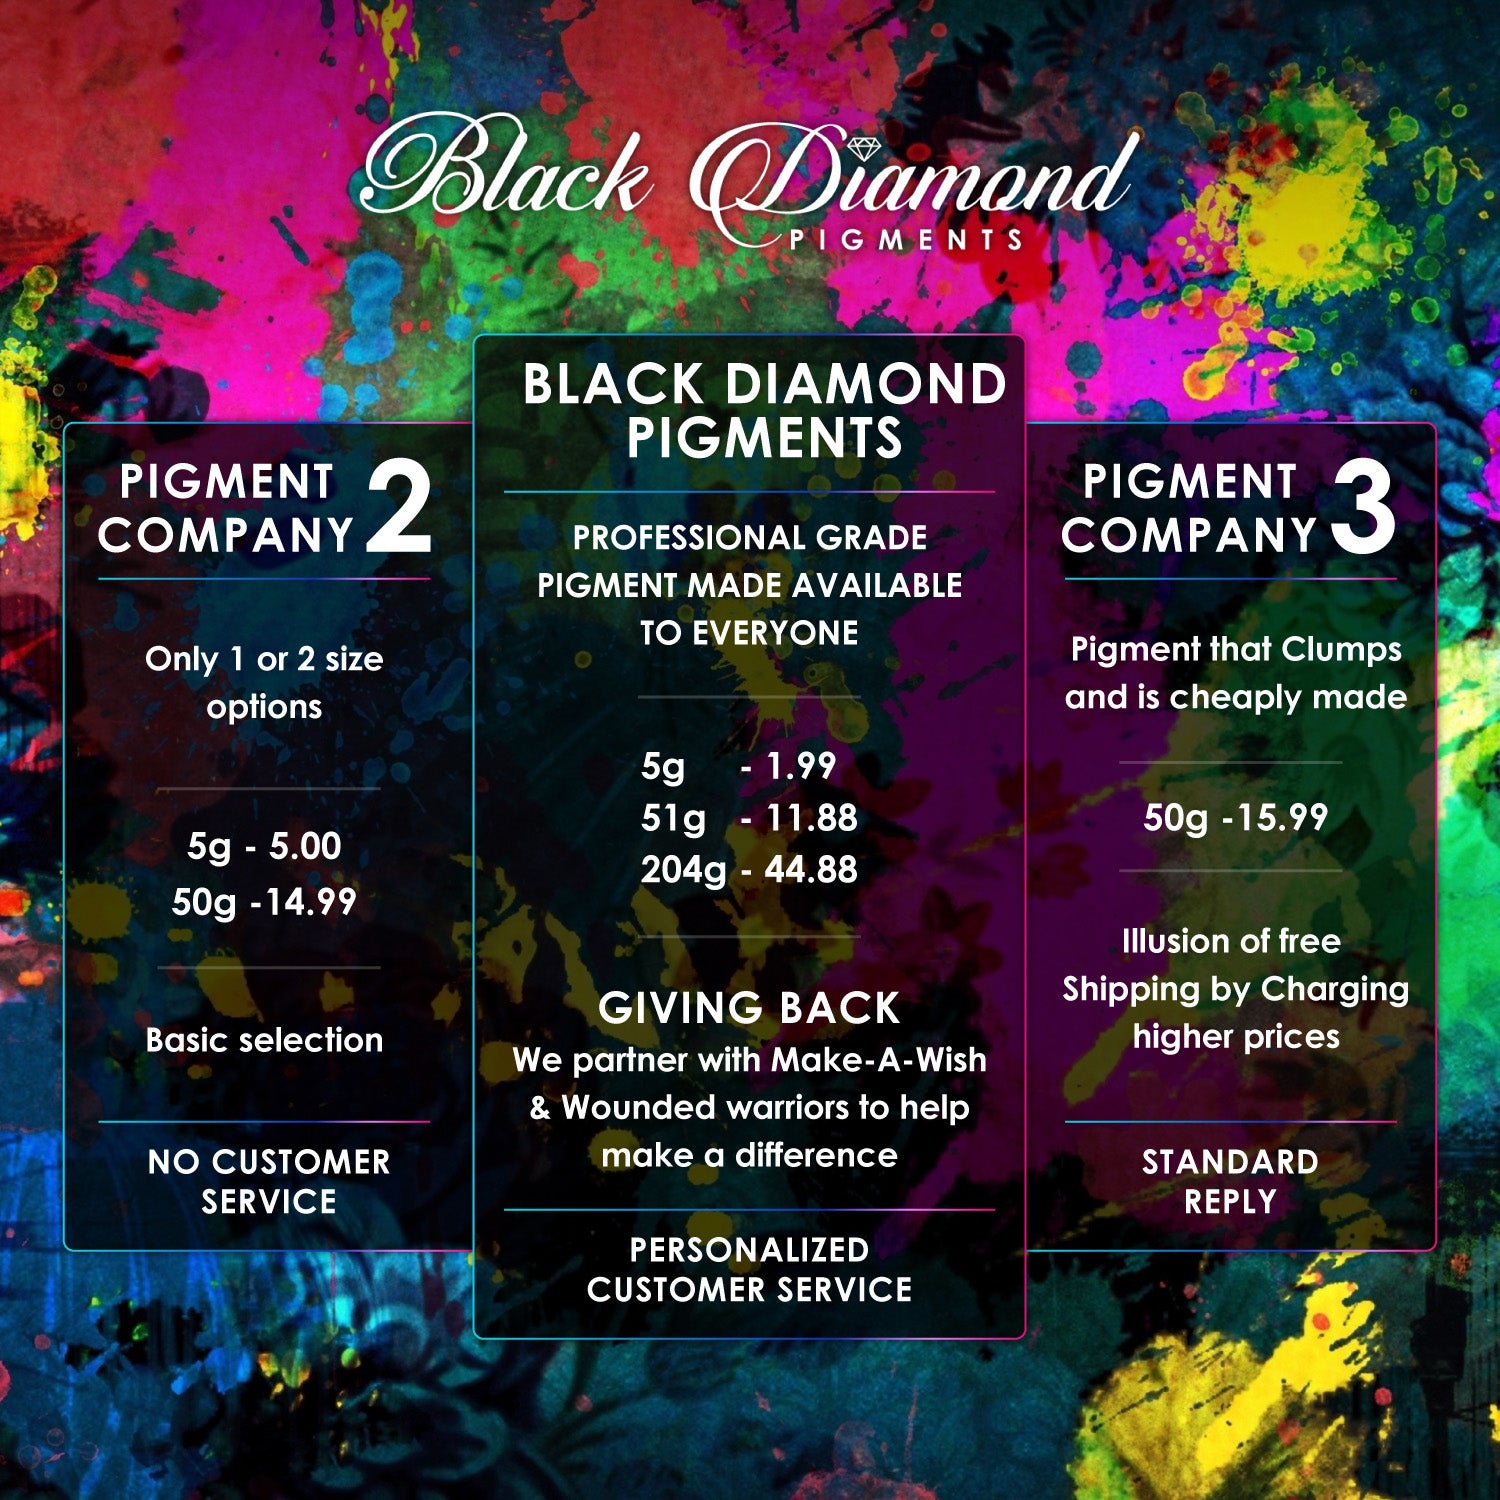 "SILVER PEARL" Black Diamond Pigments